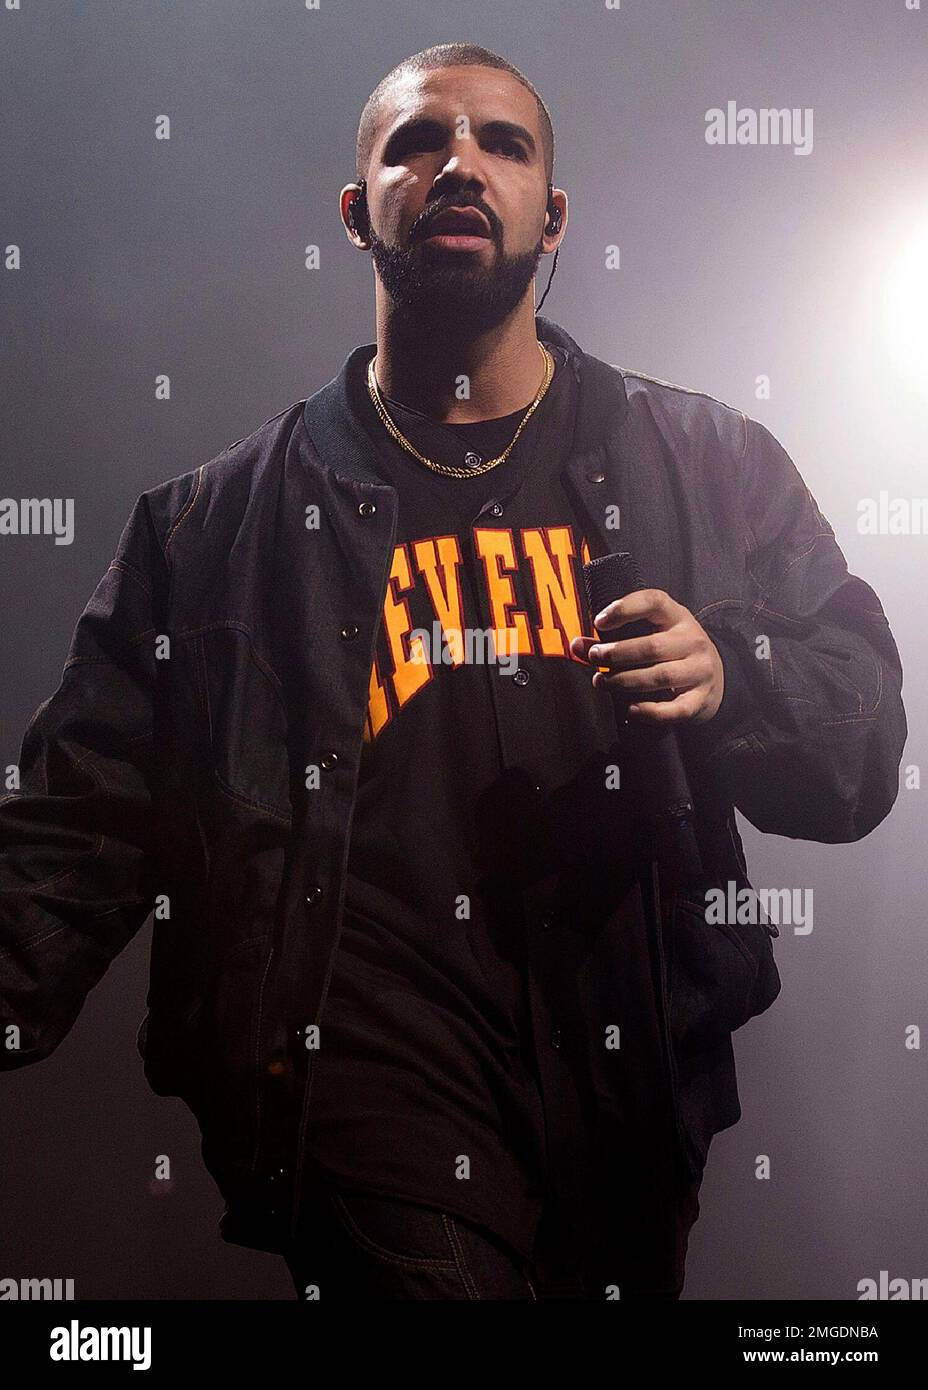 Photos: Drake @ Staples Center, September 9, 2016